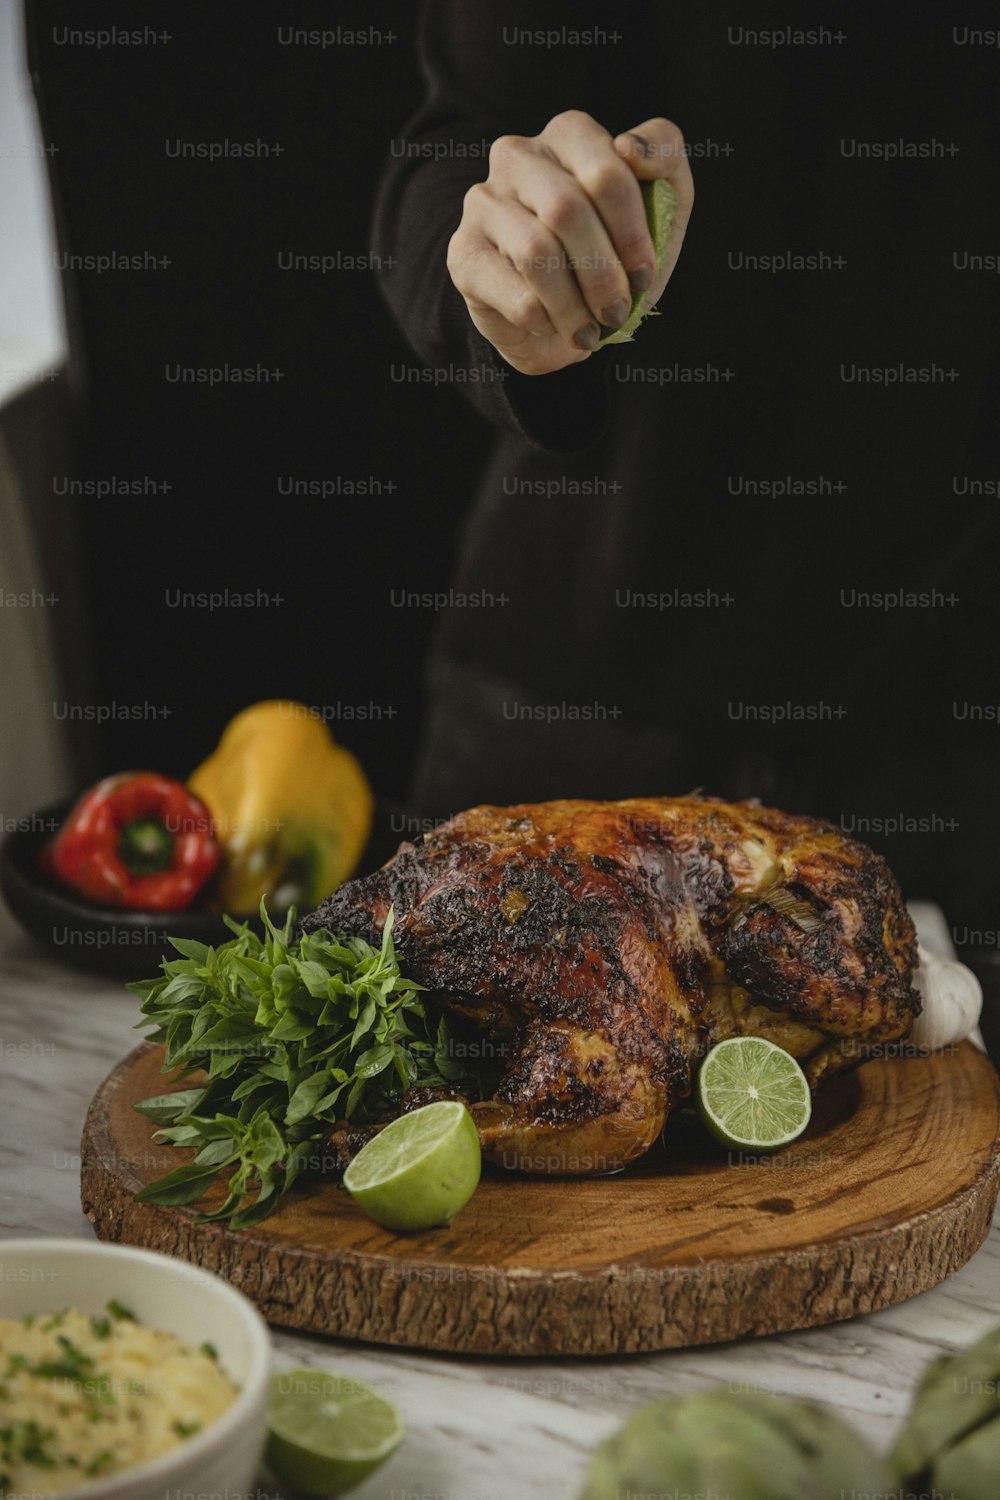 una persona cortando un pollo en una tabla de cortar